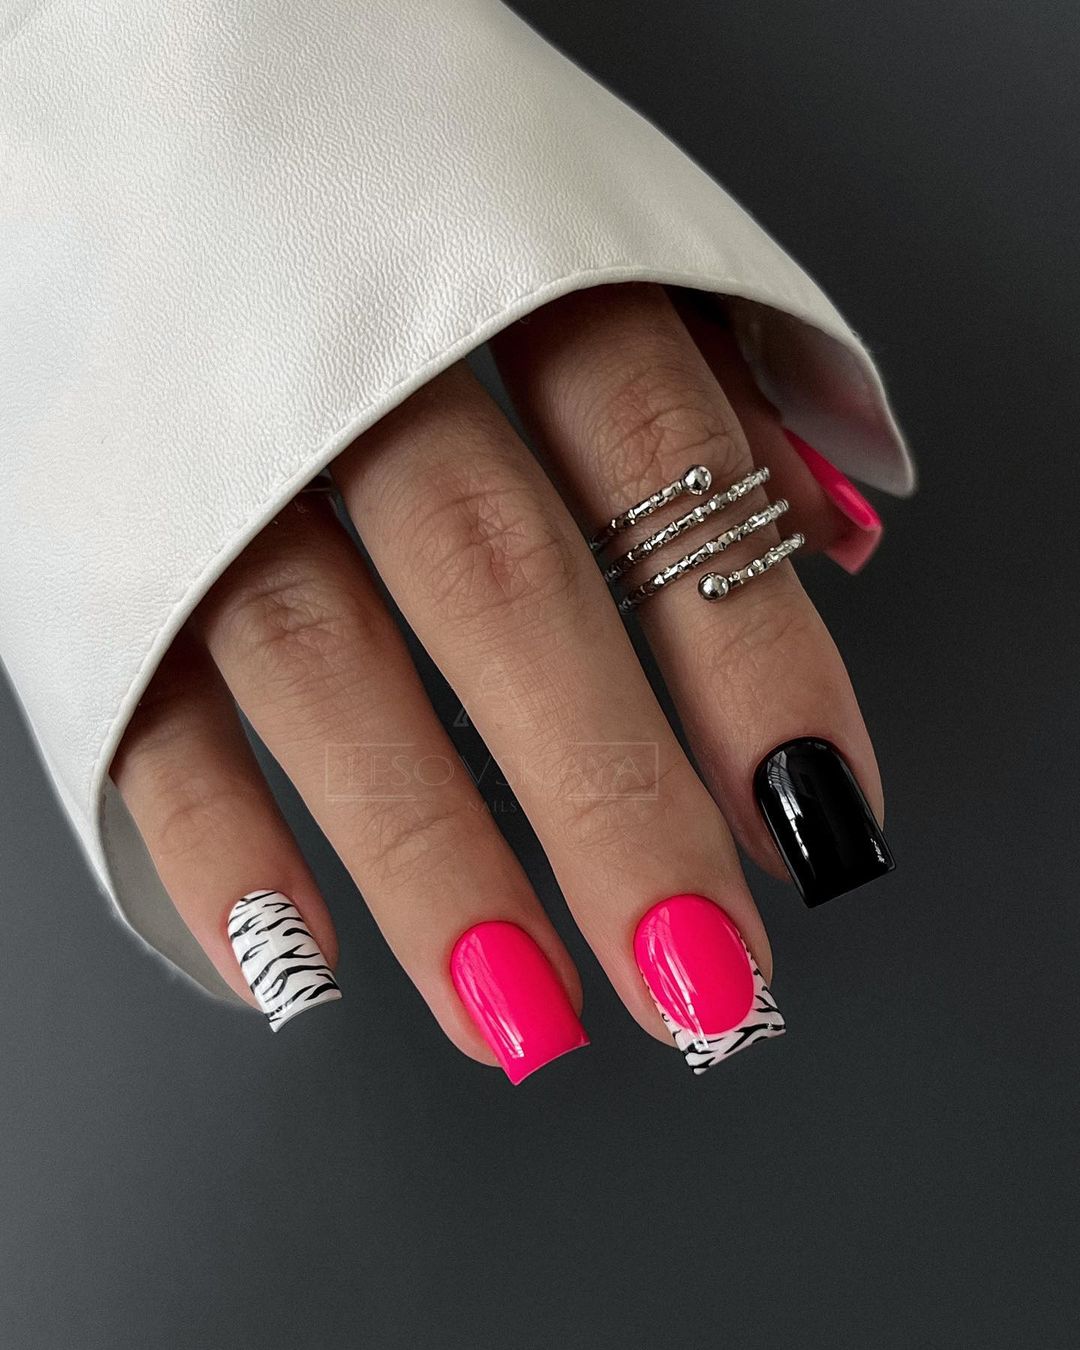 Vierkante roze en zwarte nagels met zebra-ontwerp